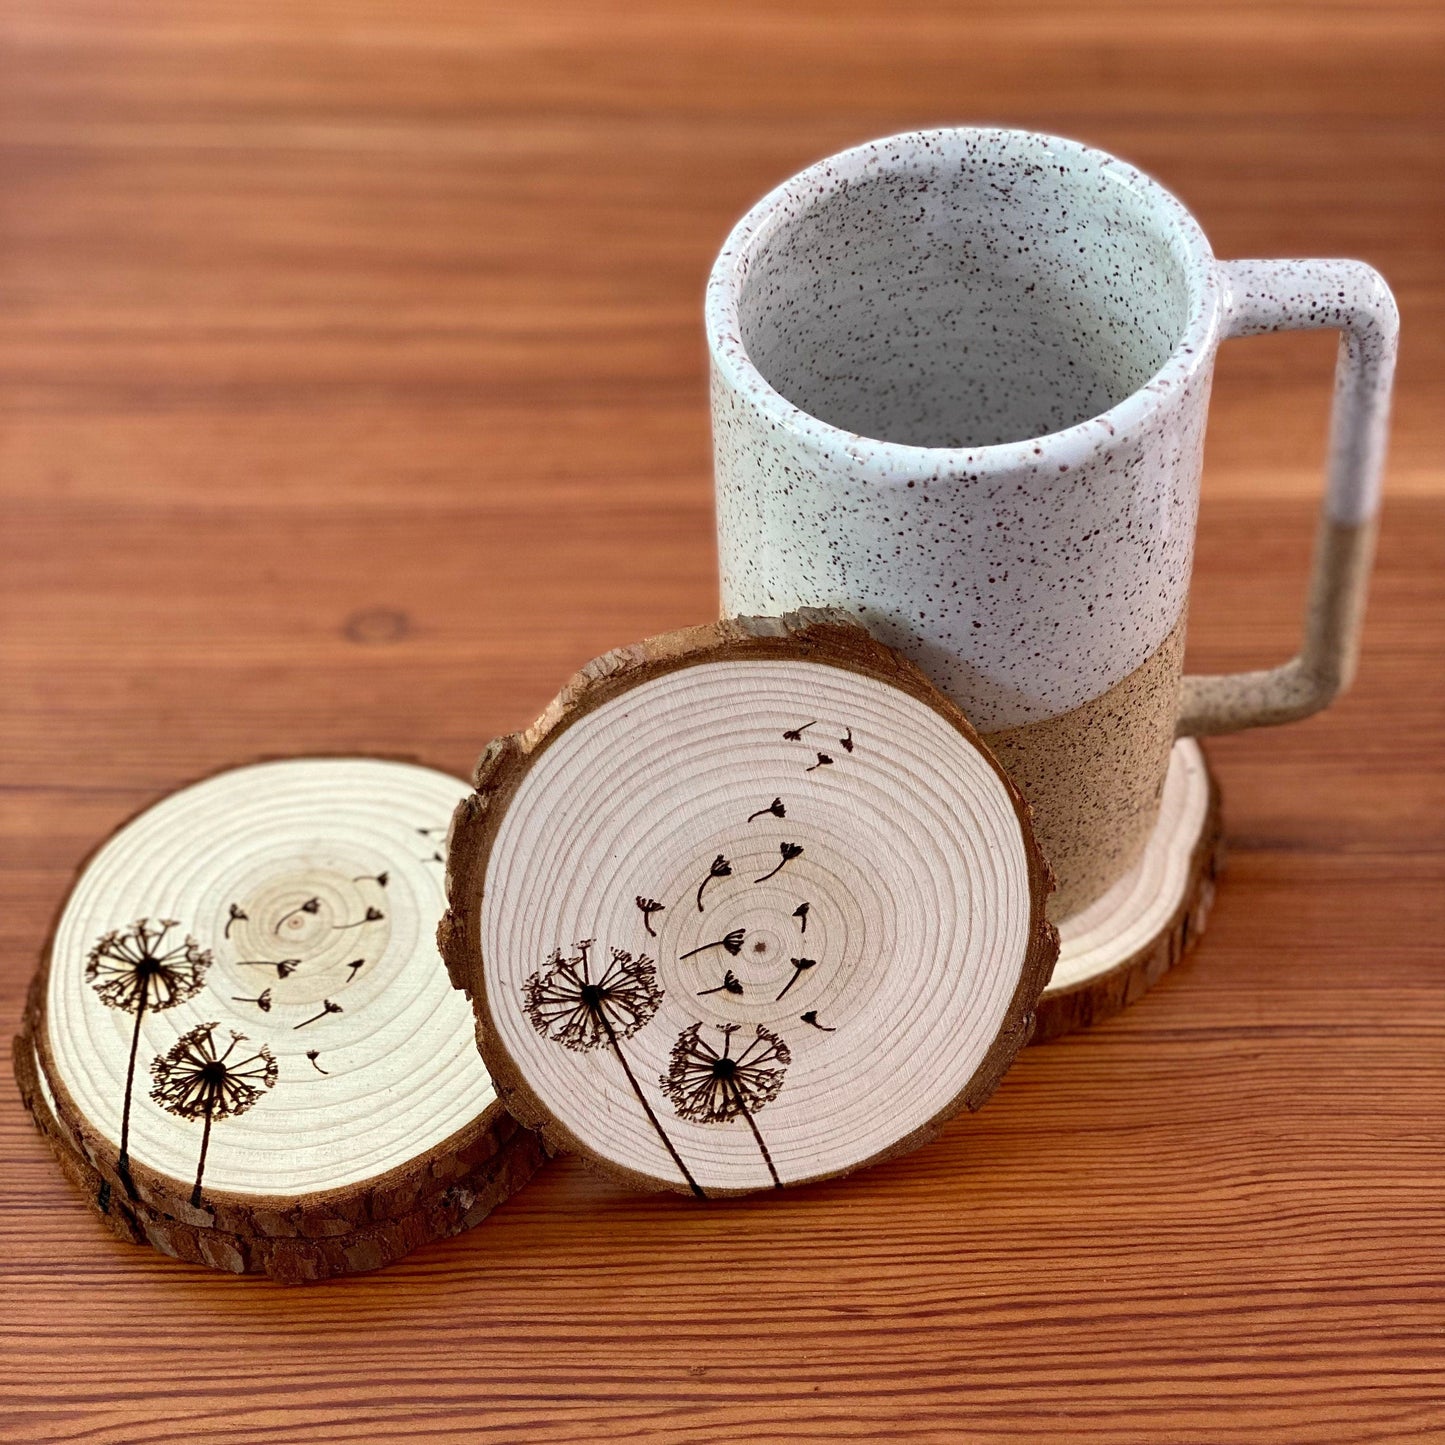 Dandelion Engraved Wood Coaster Set